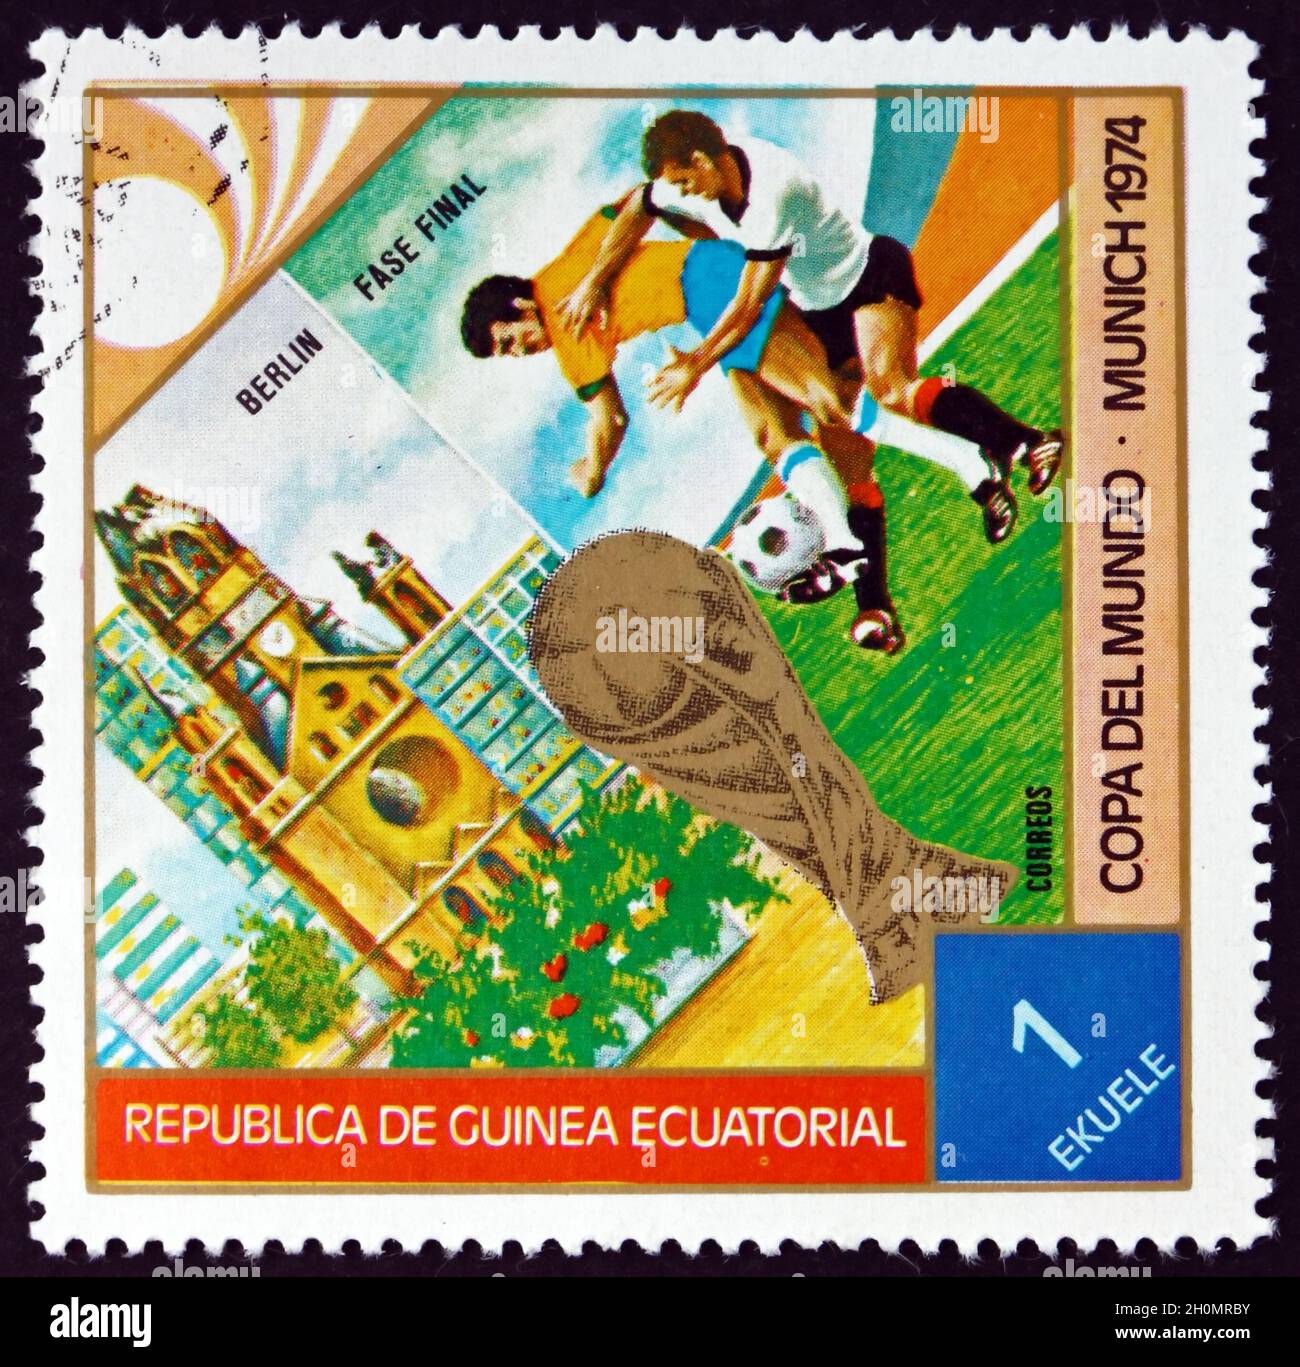 ÄQUATORIALGUINEA - UM 1974: Eine in Äquatorialguinea gedruckte Briefmarke, die der WM Fotball München 74, um 1974, gewidmet ist Stockfoto